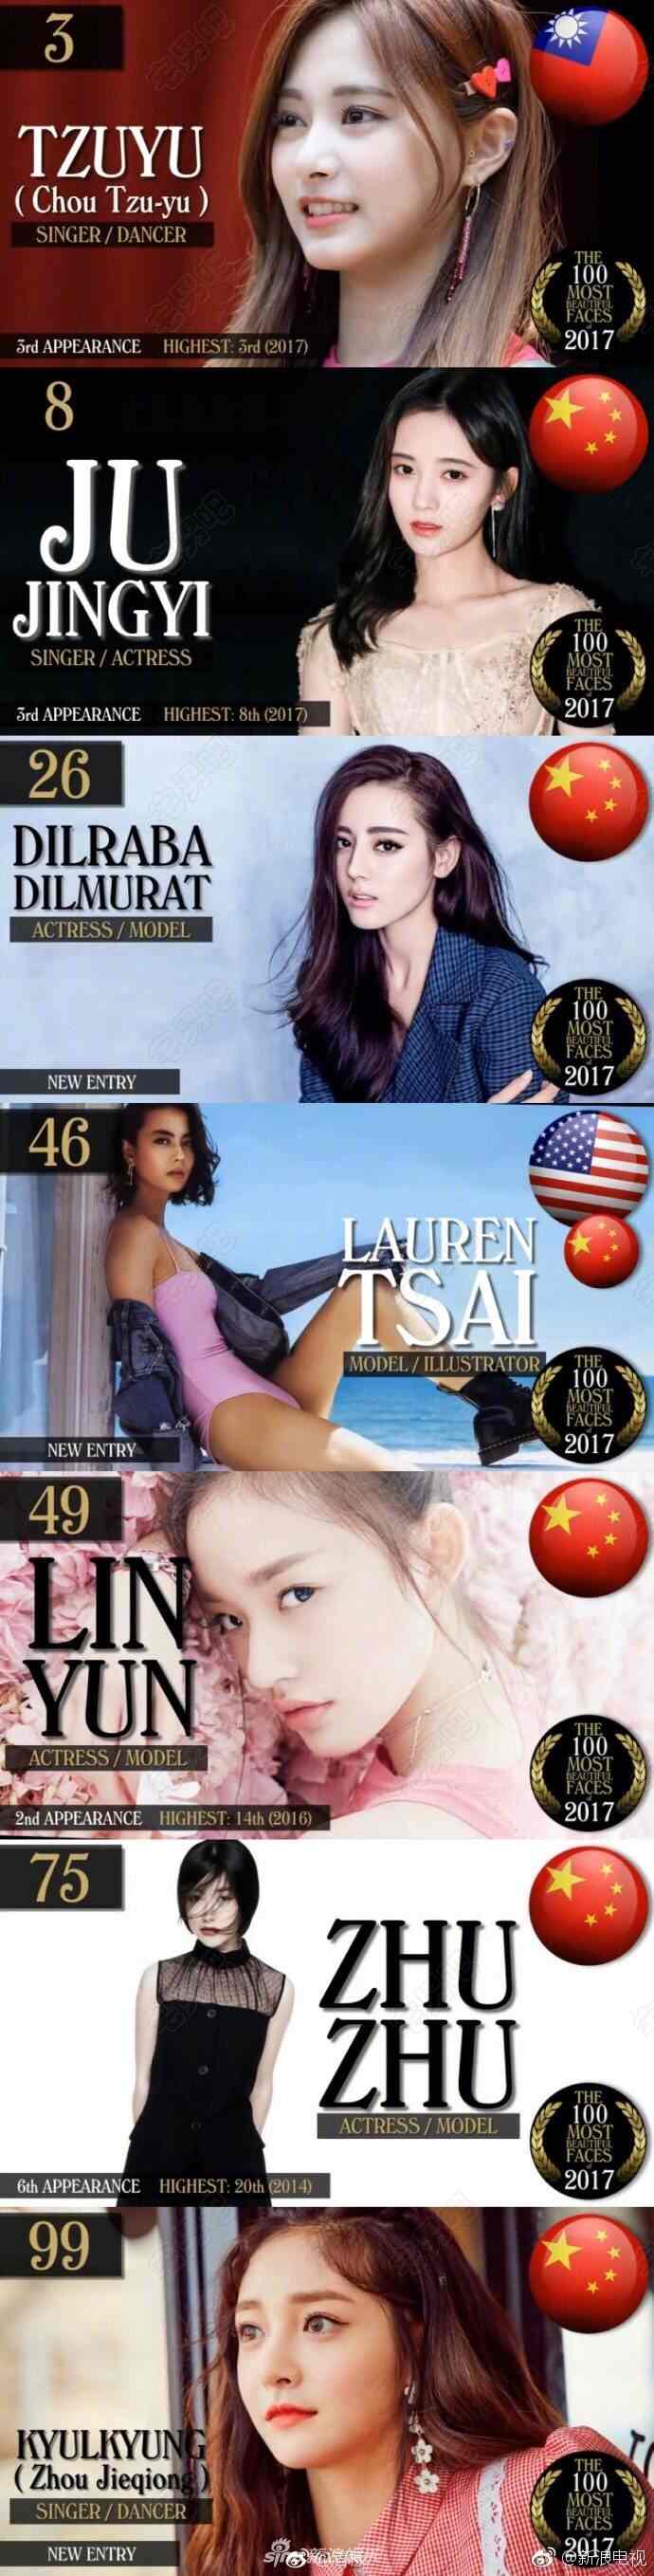 鞠婧祎 迪丽热巴 周子瑜 全球最美面孔排行榜 